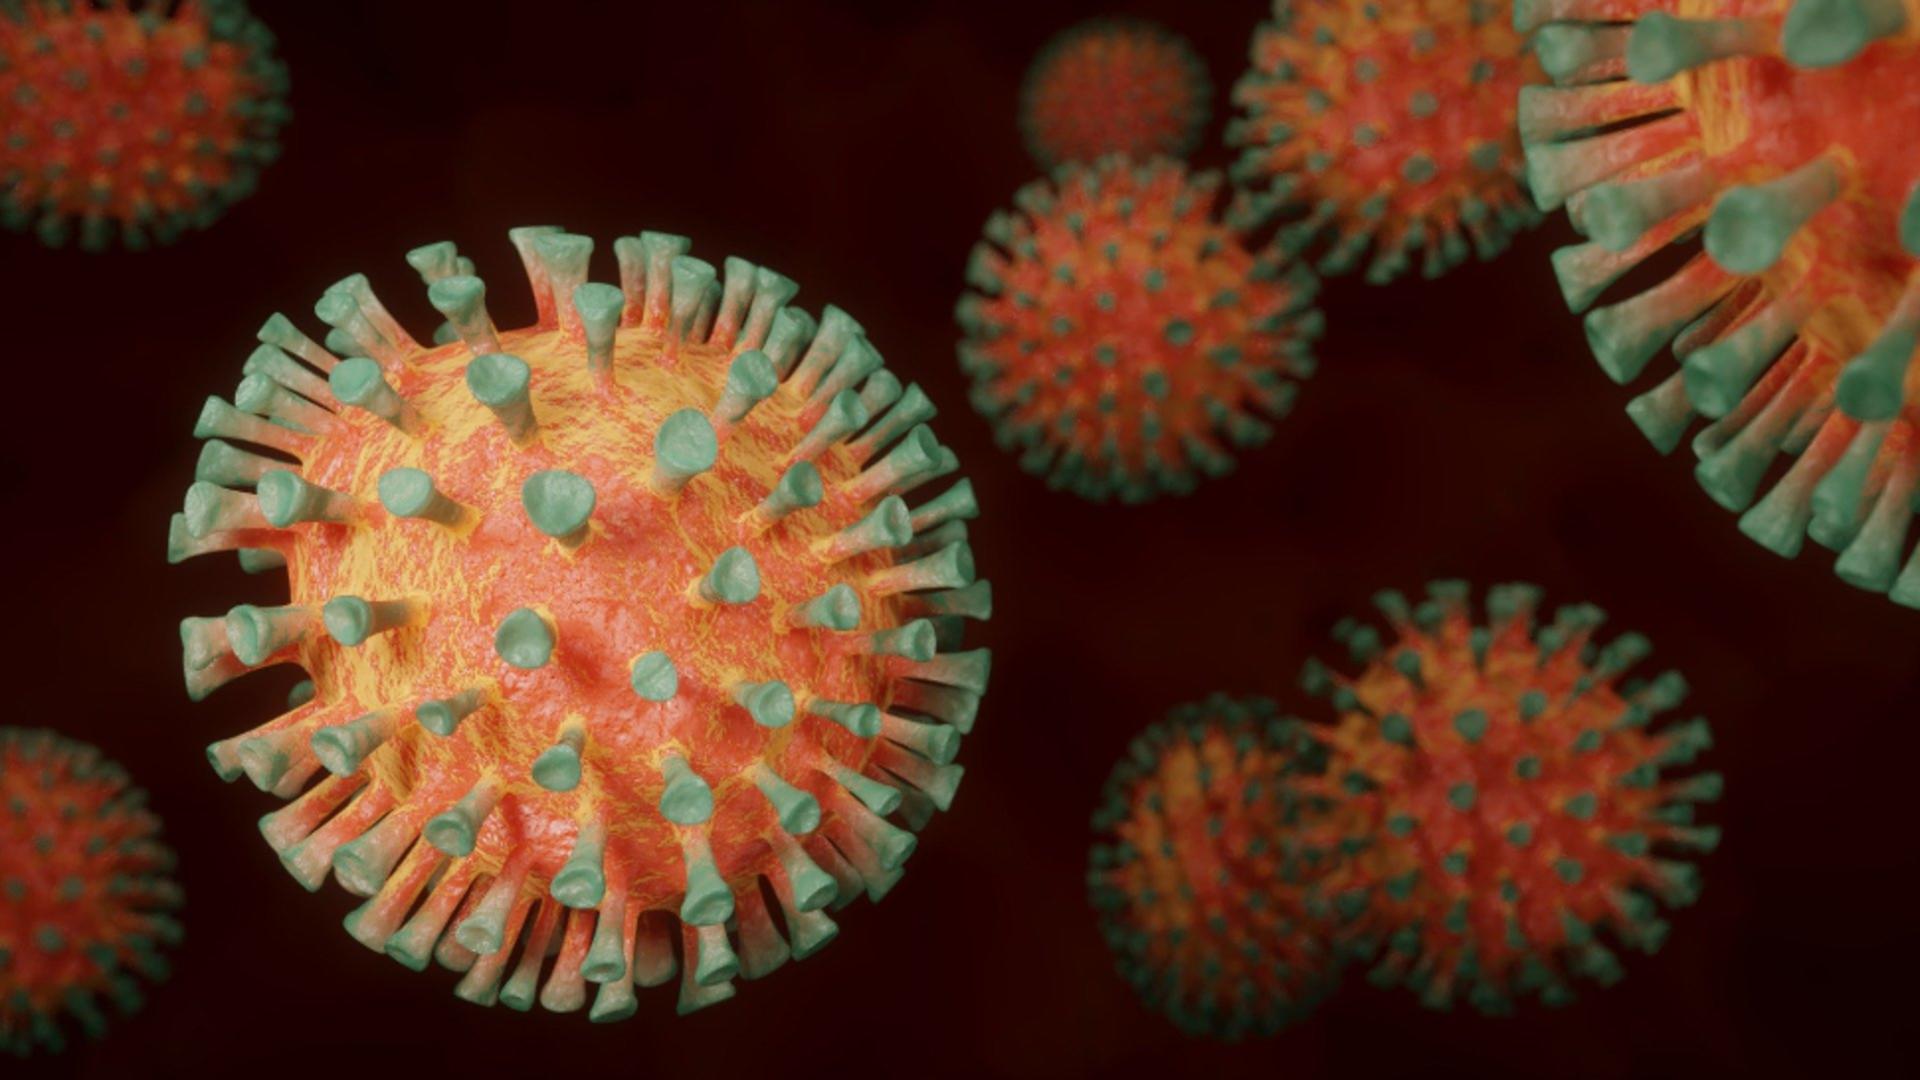 Focar de infectare cu Norovirus, în Brașov. Foto: Pixabay